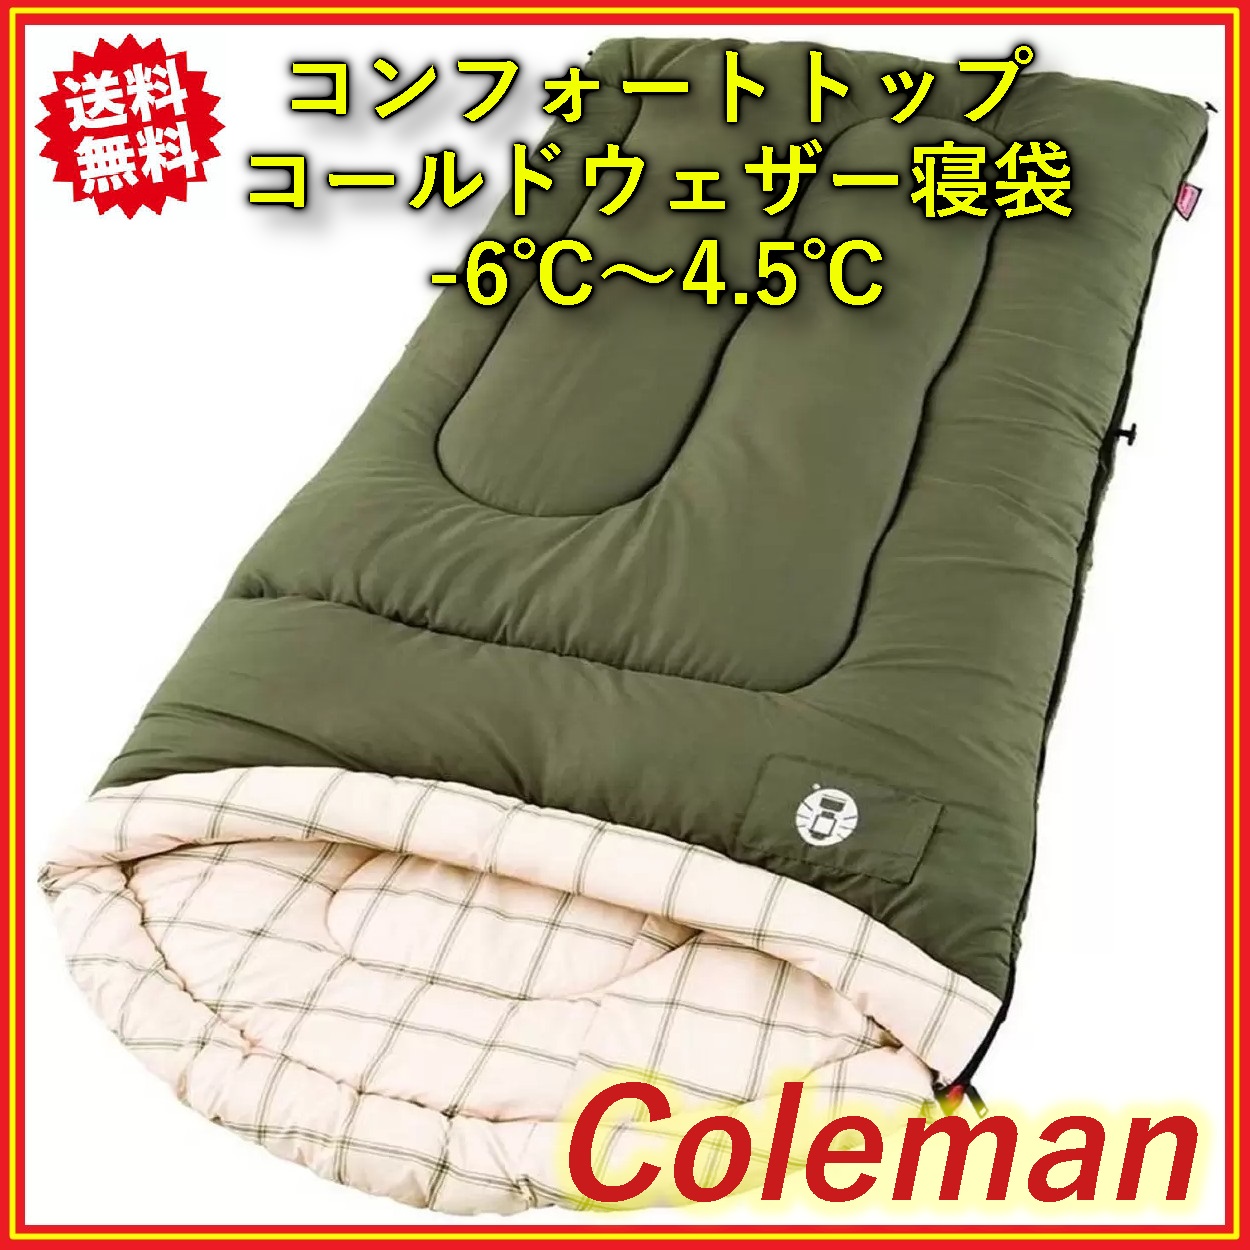 Coleman(コールマン) コンフォートトップ コールドウェザー シュラフ 寝袋 封筒型 大人 冬用 -6℃〜4.5℃対応 コストコ【送料無料】